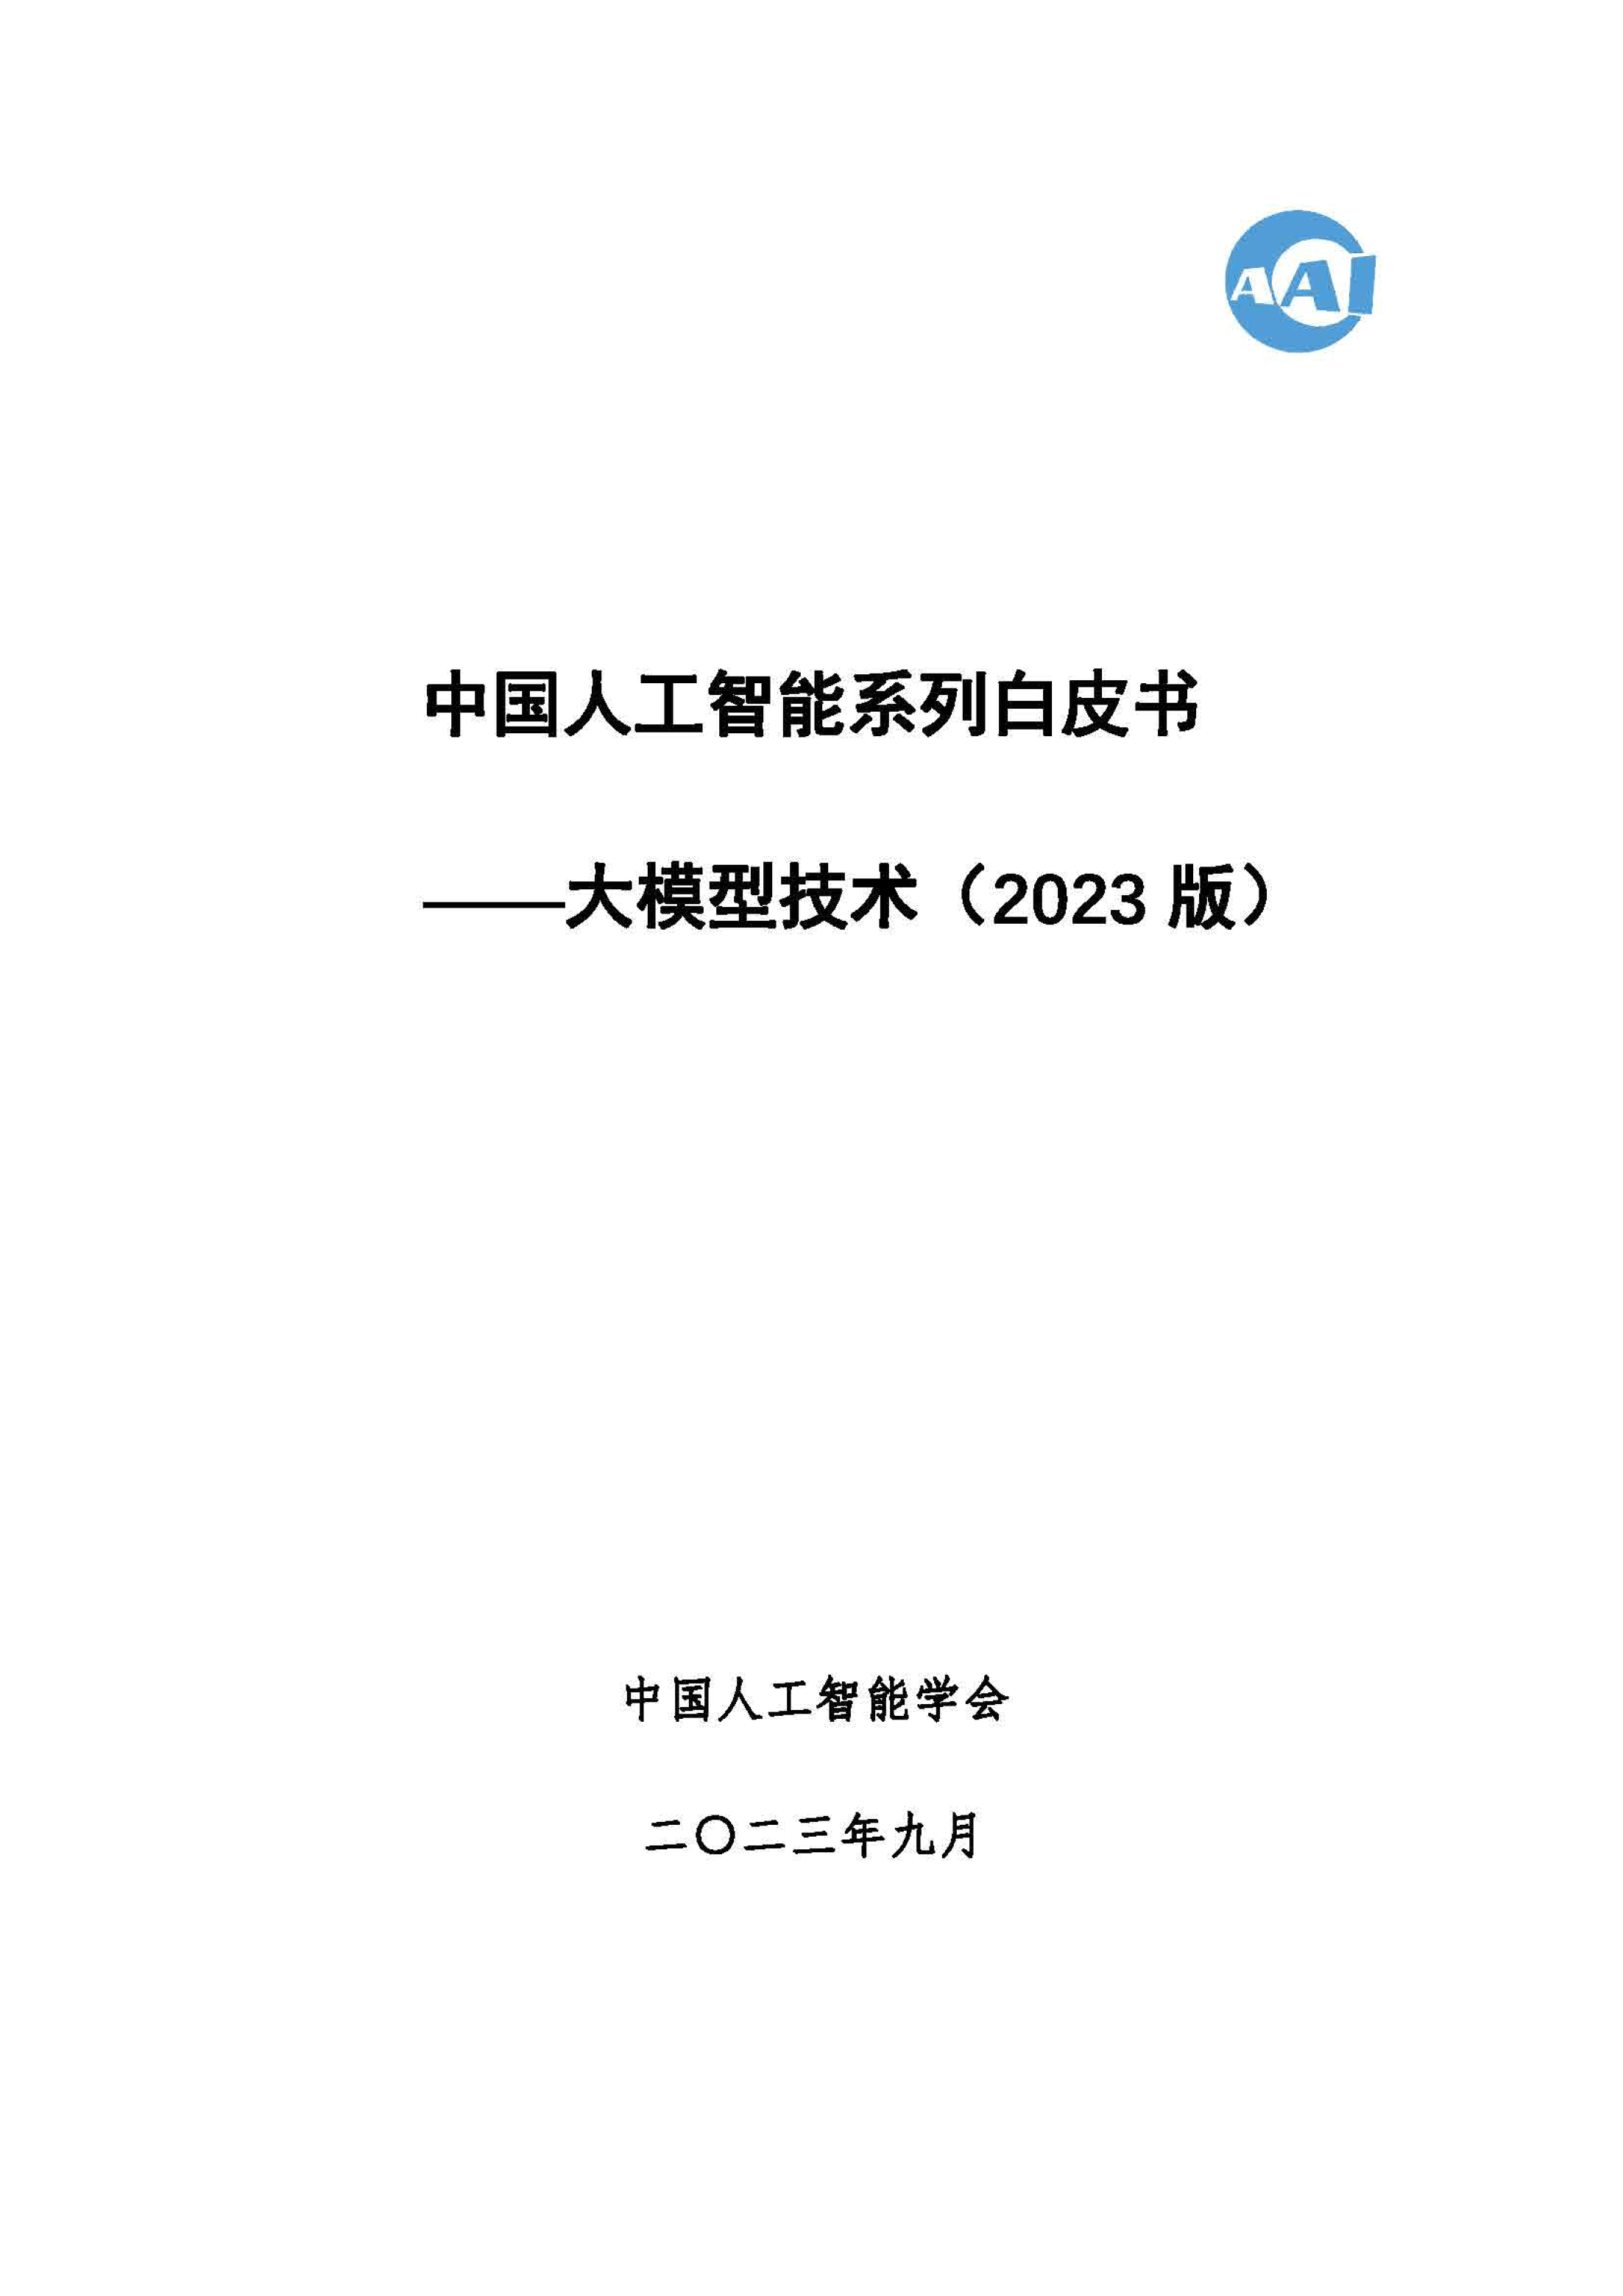 2023 中国人工智能系列白皮书